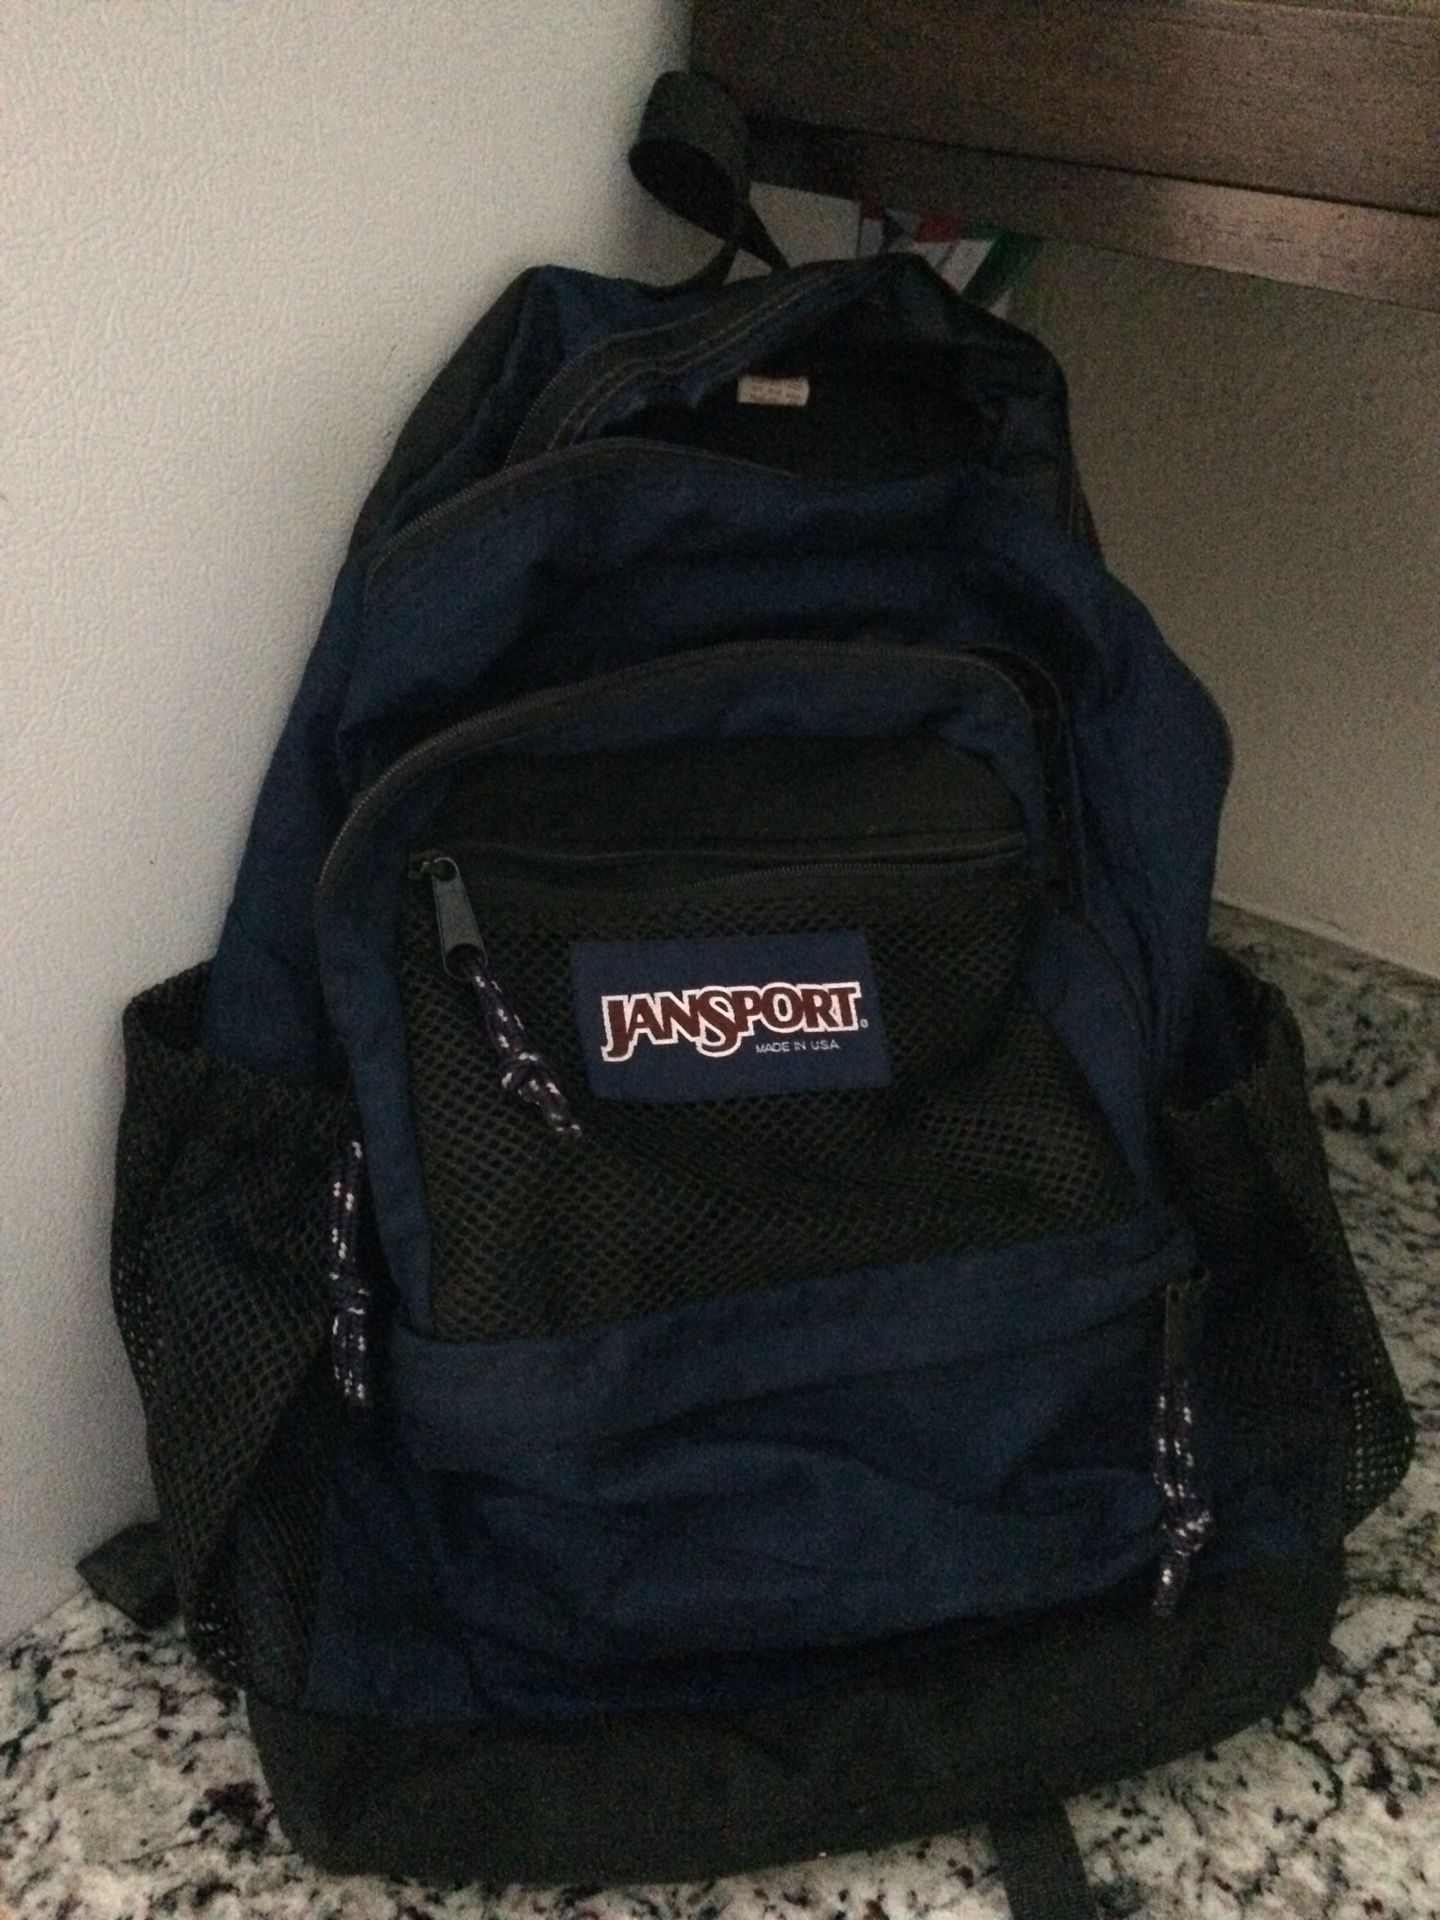 4 backpacks.